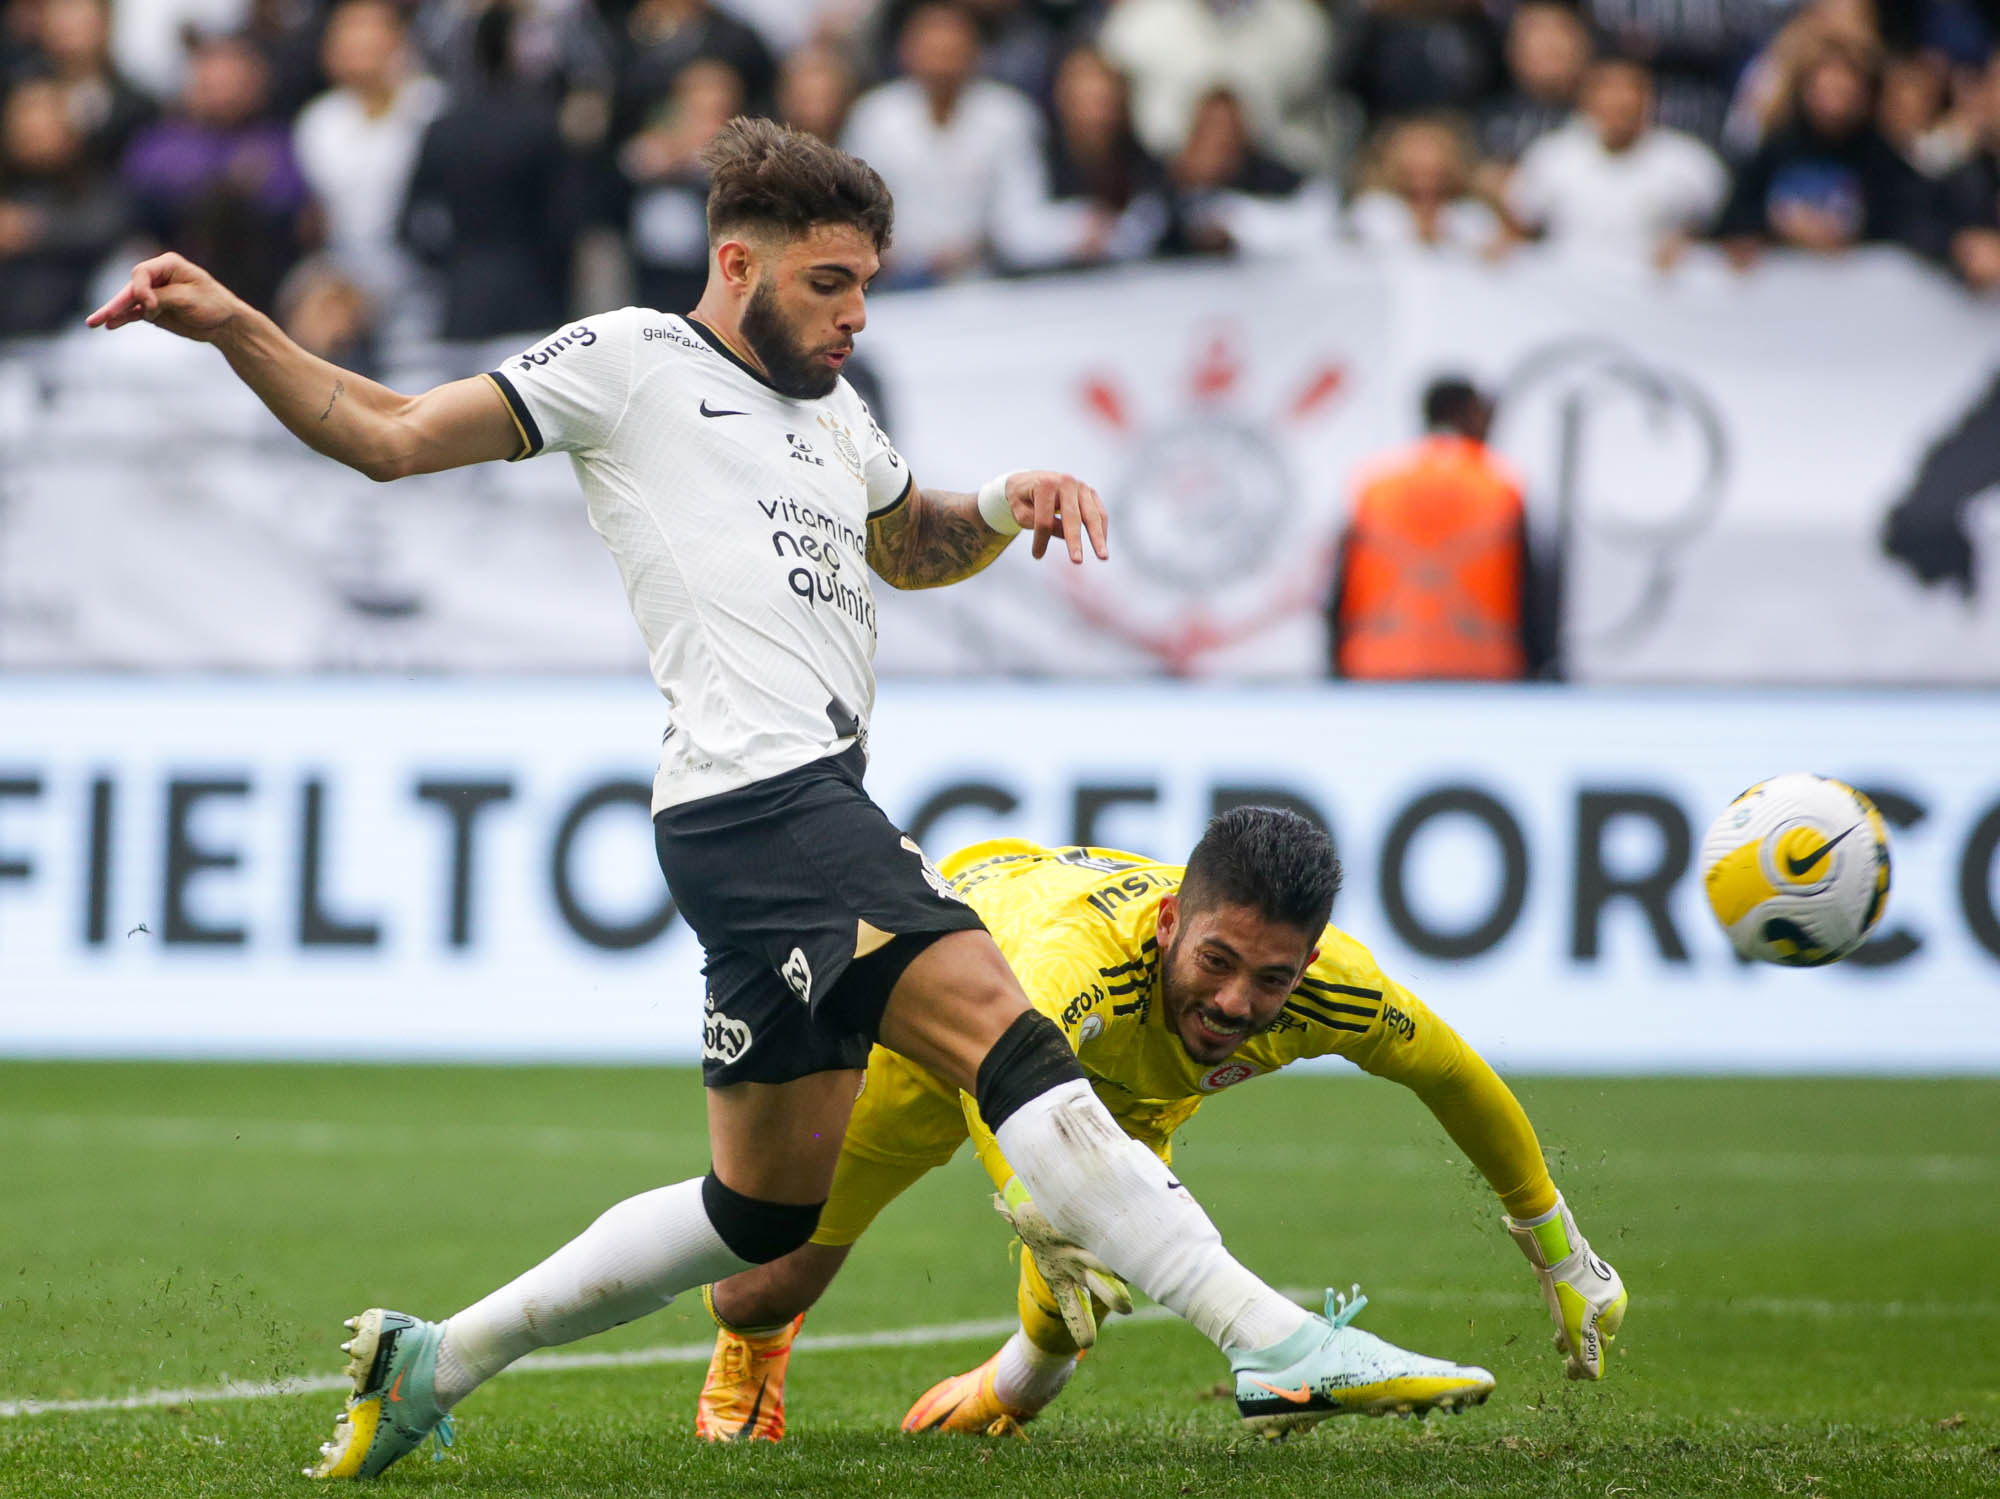 Corinthians volta a fazer gol em cobrança de escanteio após mais